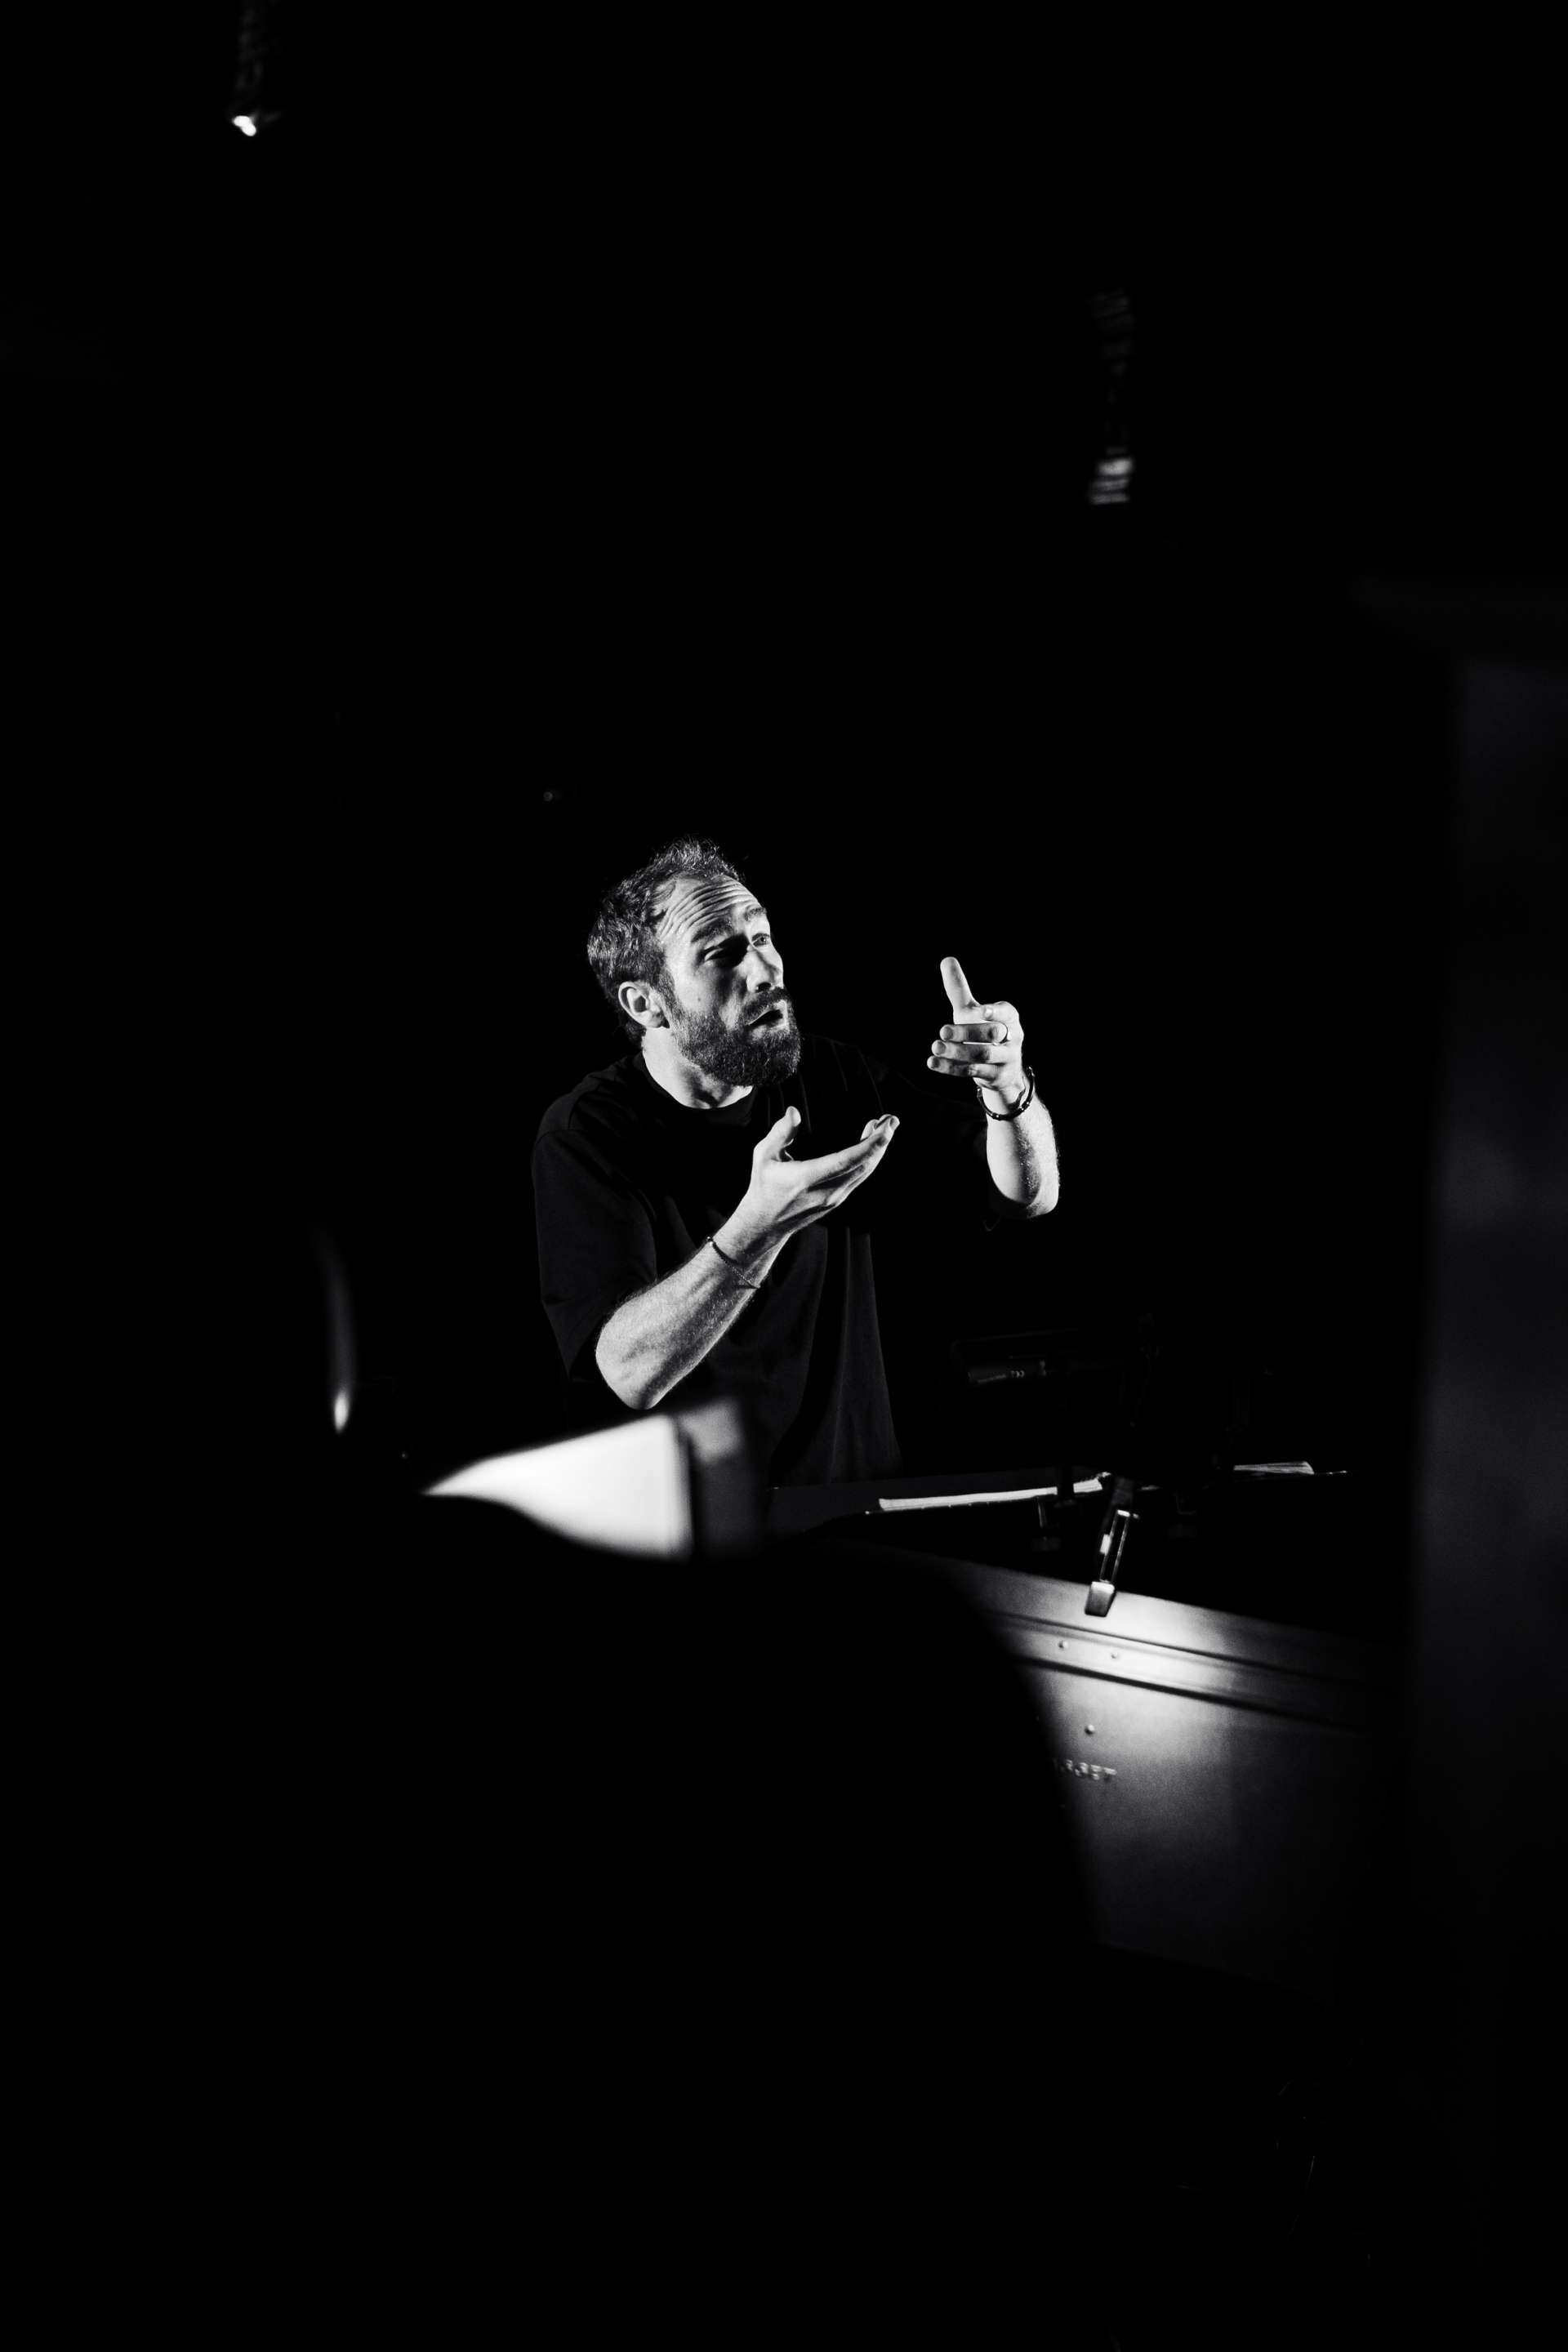 Portrait noir et blanc du chef d'orchestre Simon-Pierre Bestion